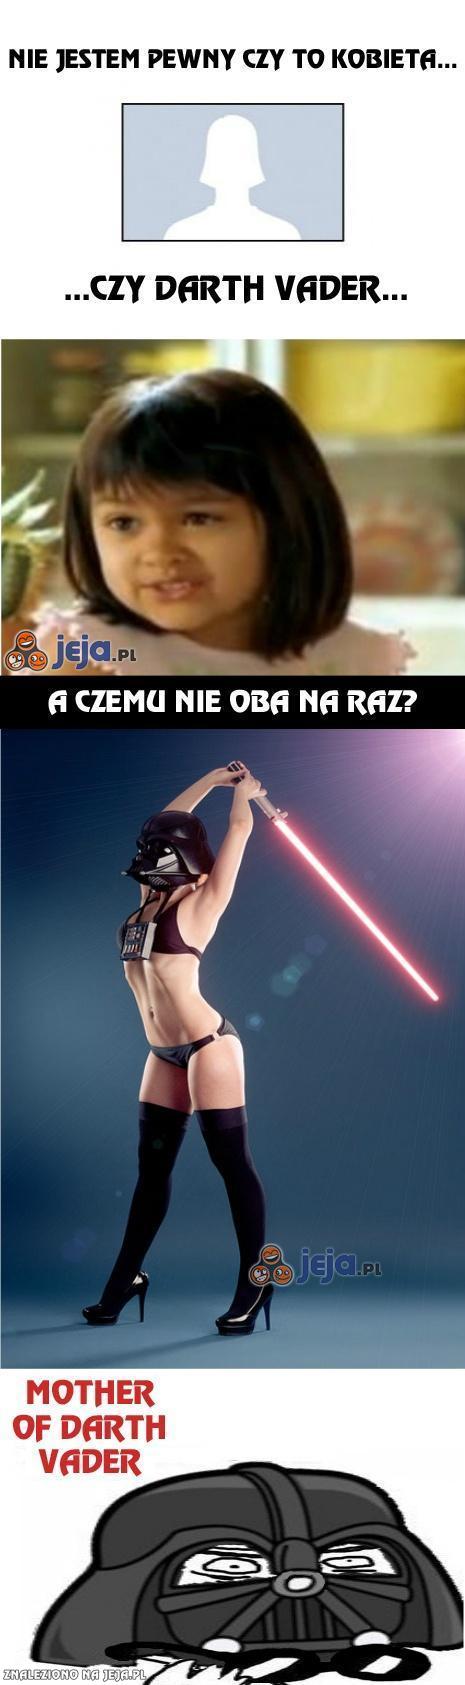 Kobieta czy Darth Vader?